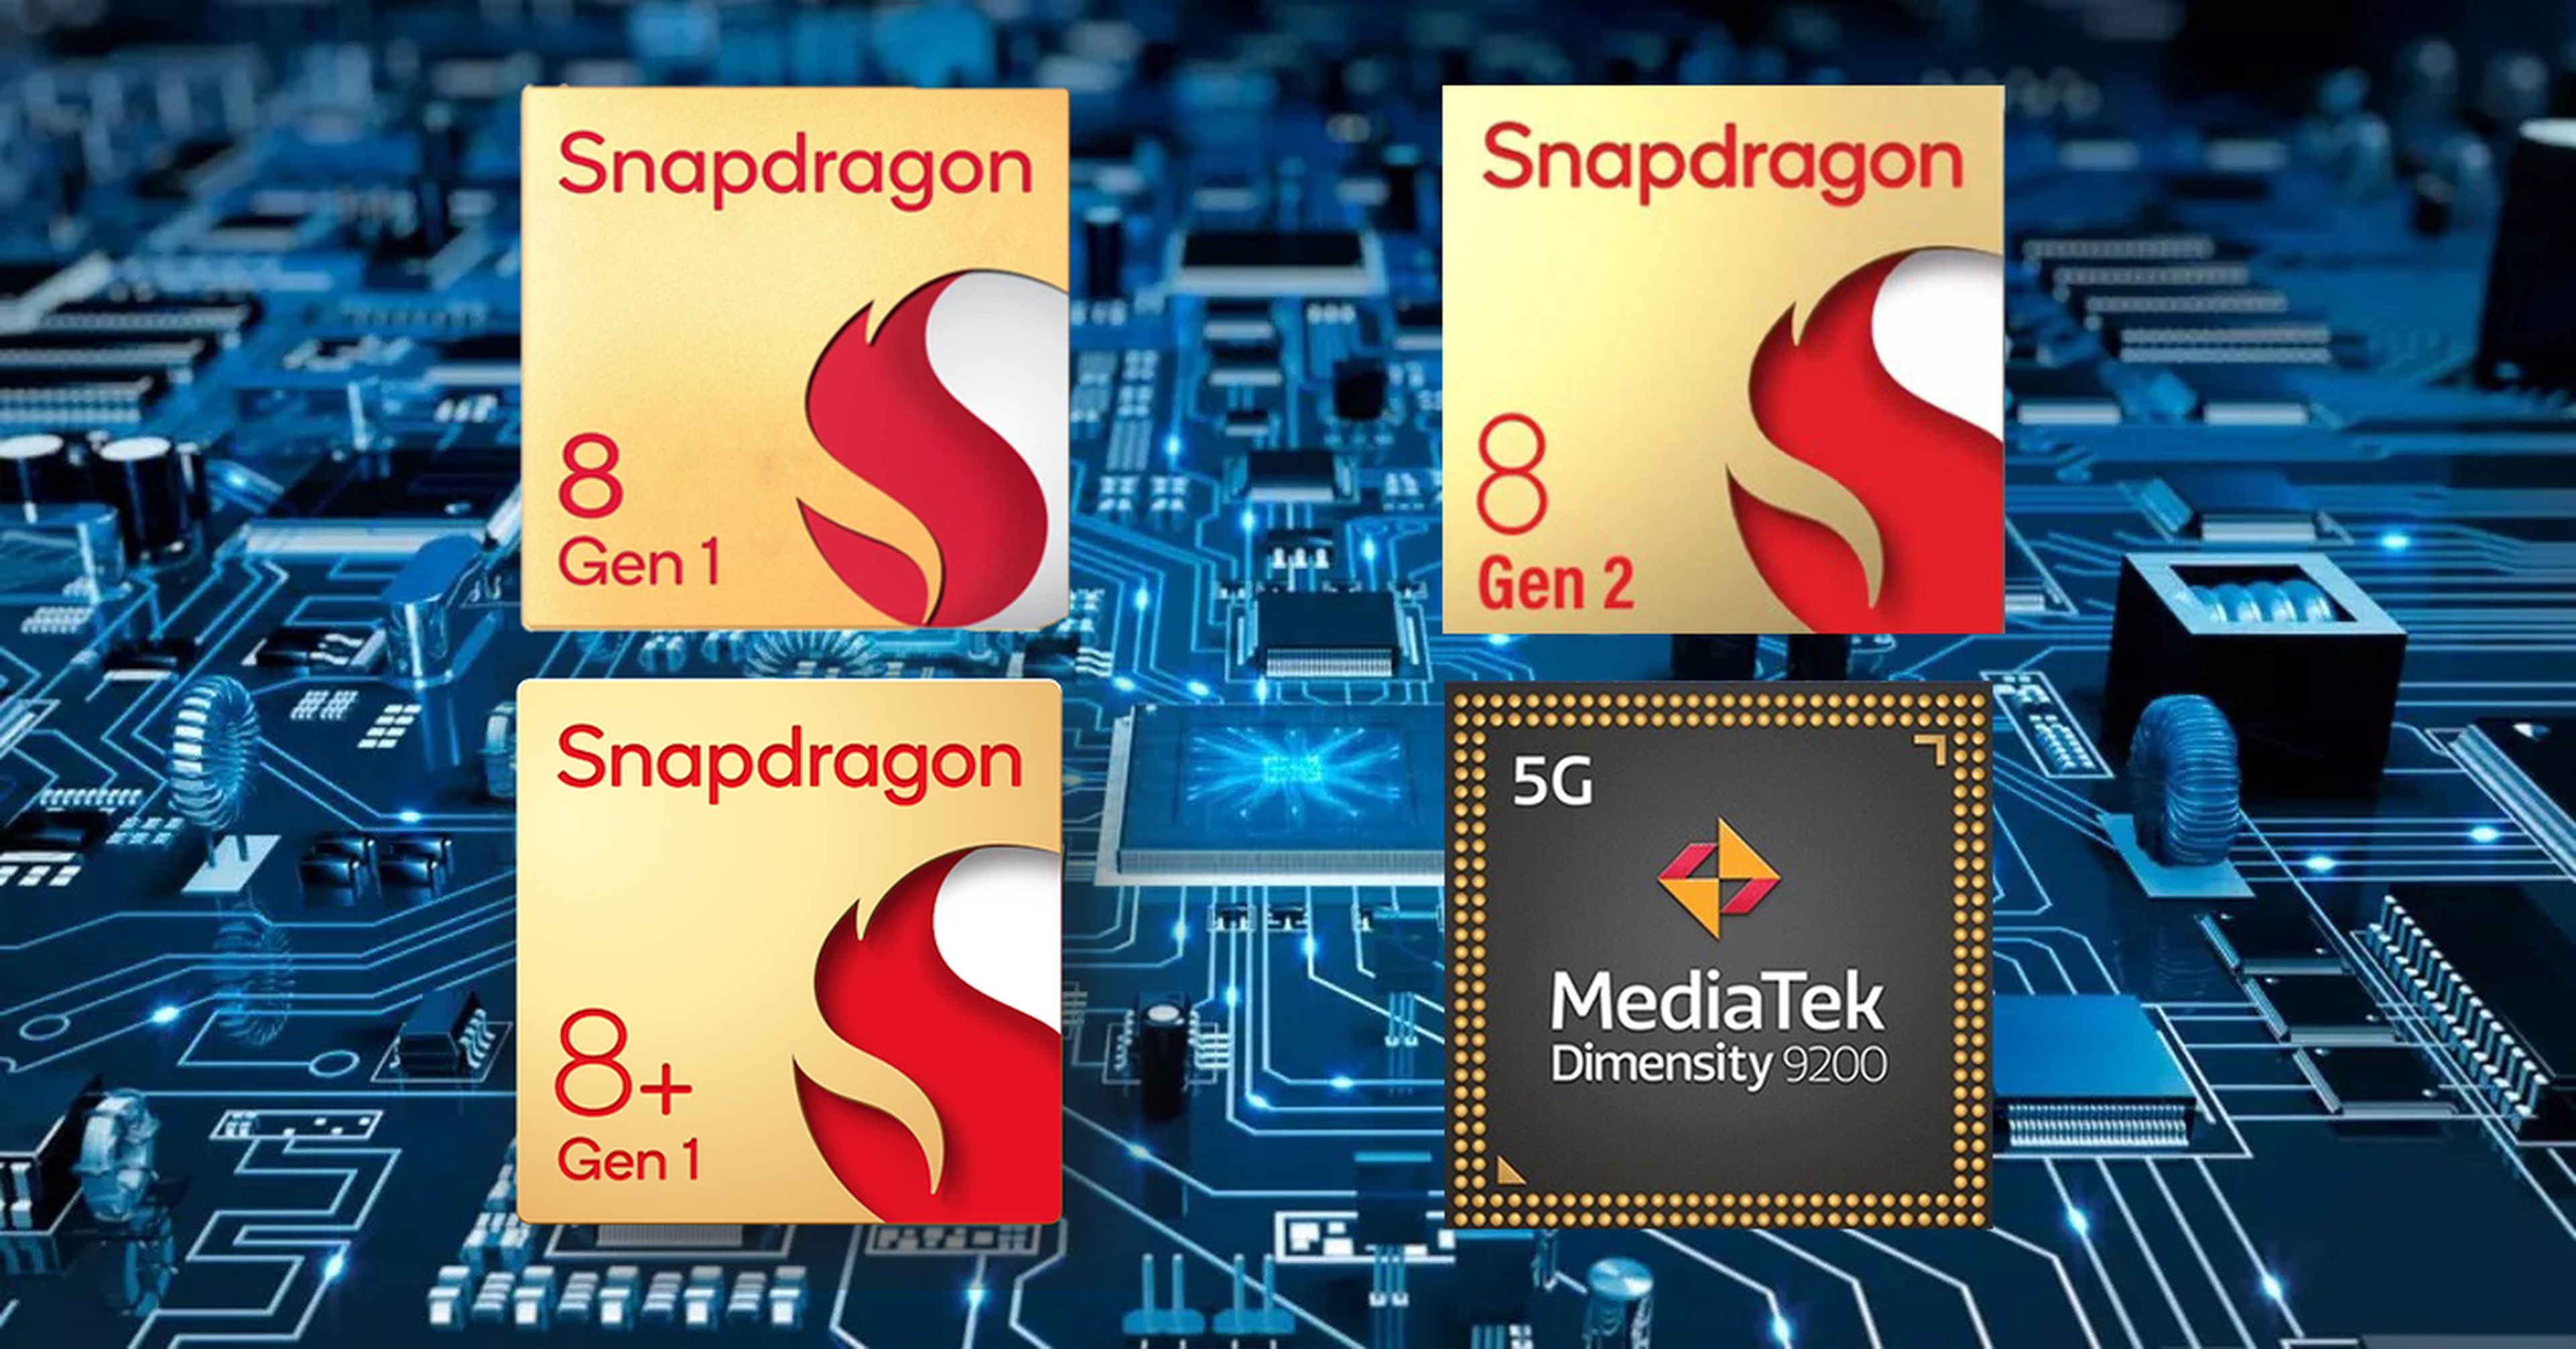 Así queda el Snapdragon 8 Gen 2 frente a su competencia directa top